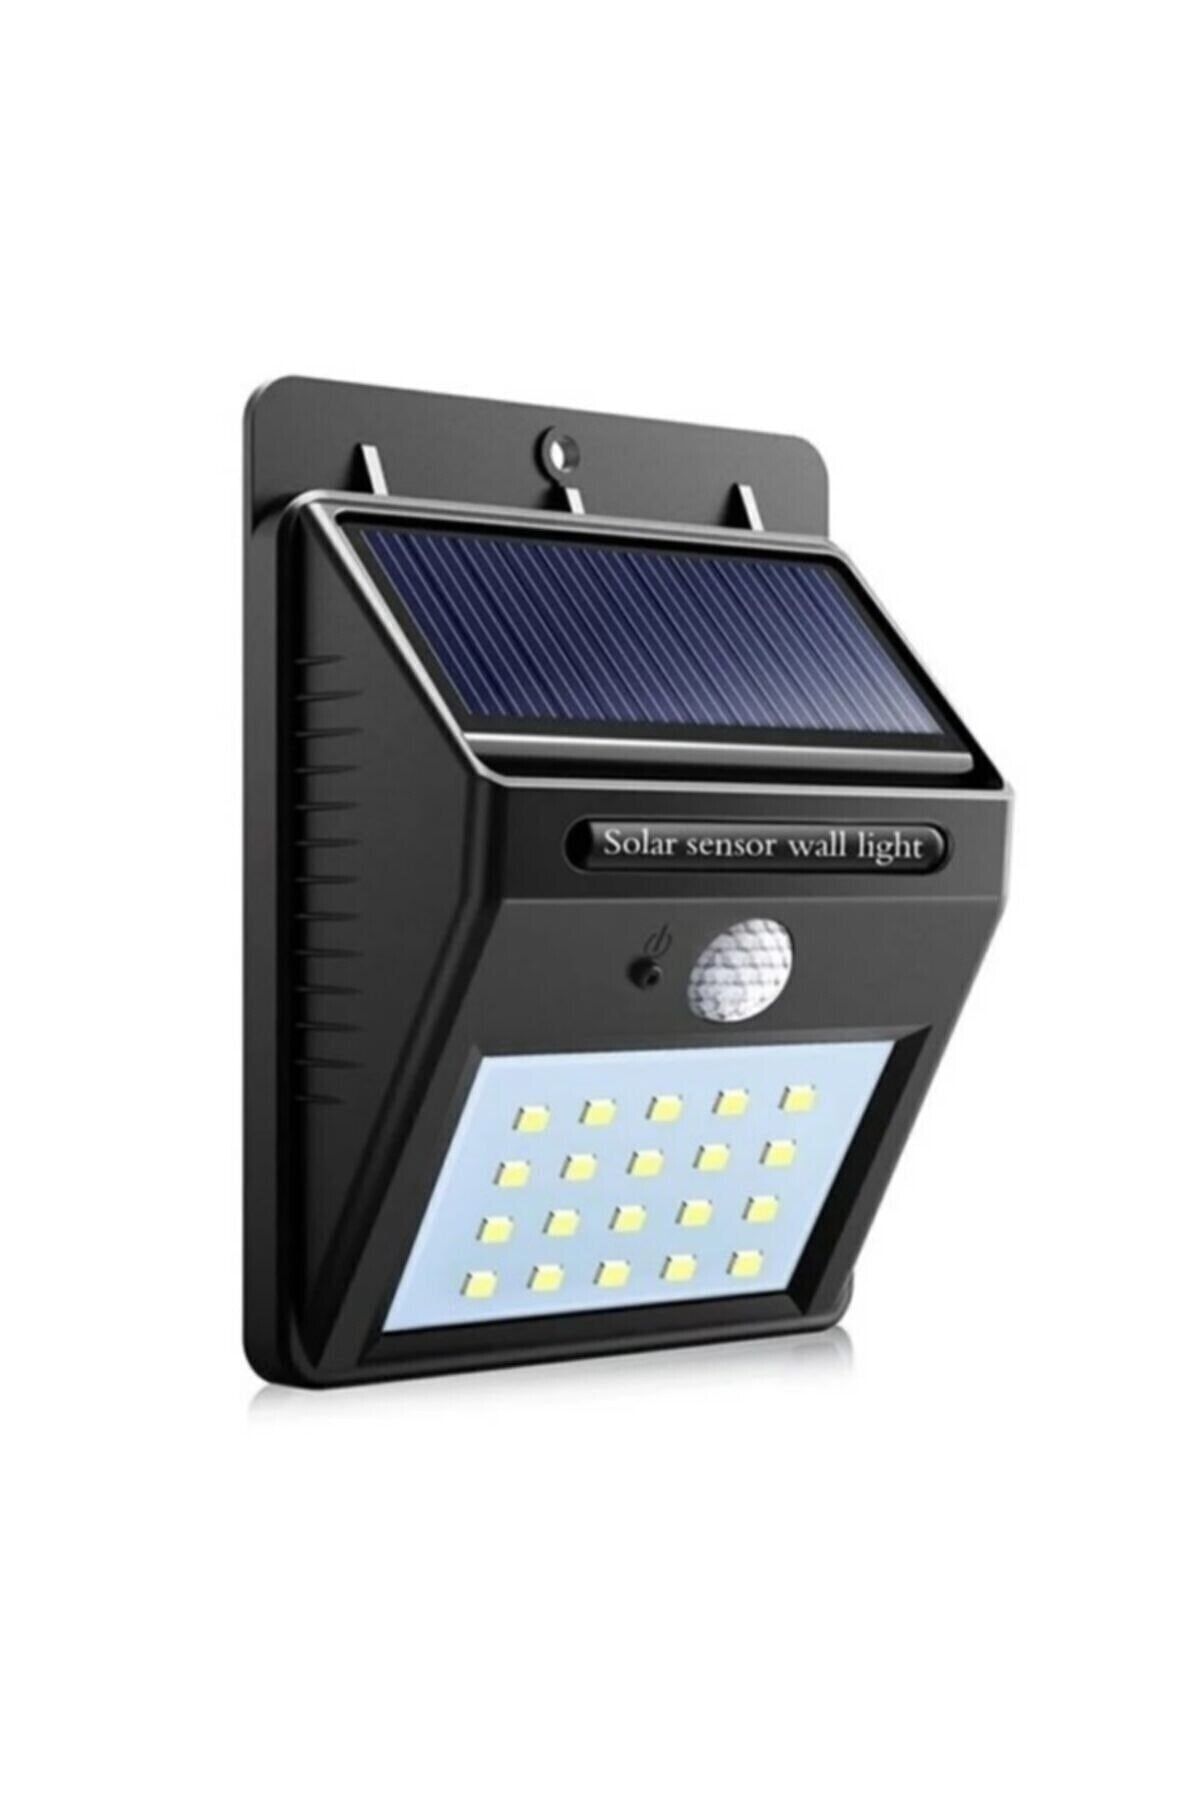 Chermik Işık Sensörlü Güneş Enerjili Solar Duvar Kapı Kamp Bahçe Lambası Fotoselli Projektör 20led Lambalı